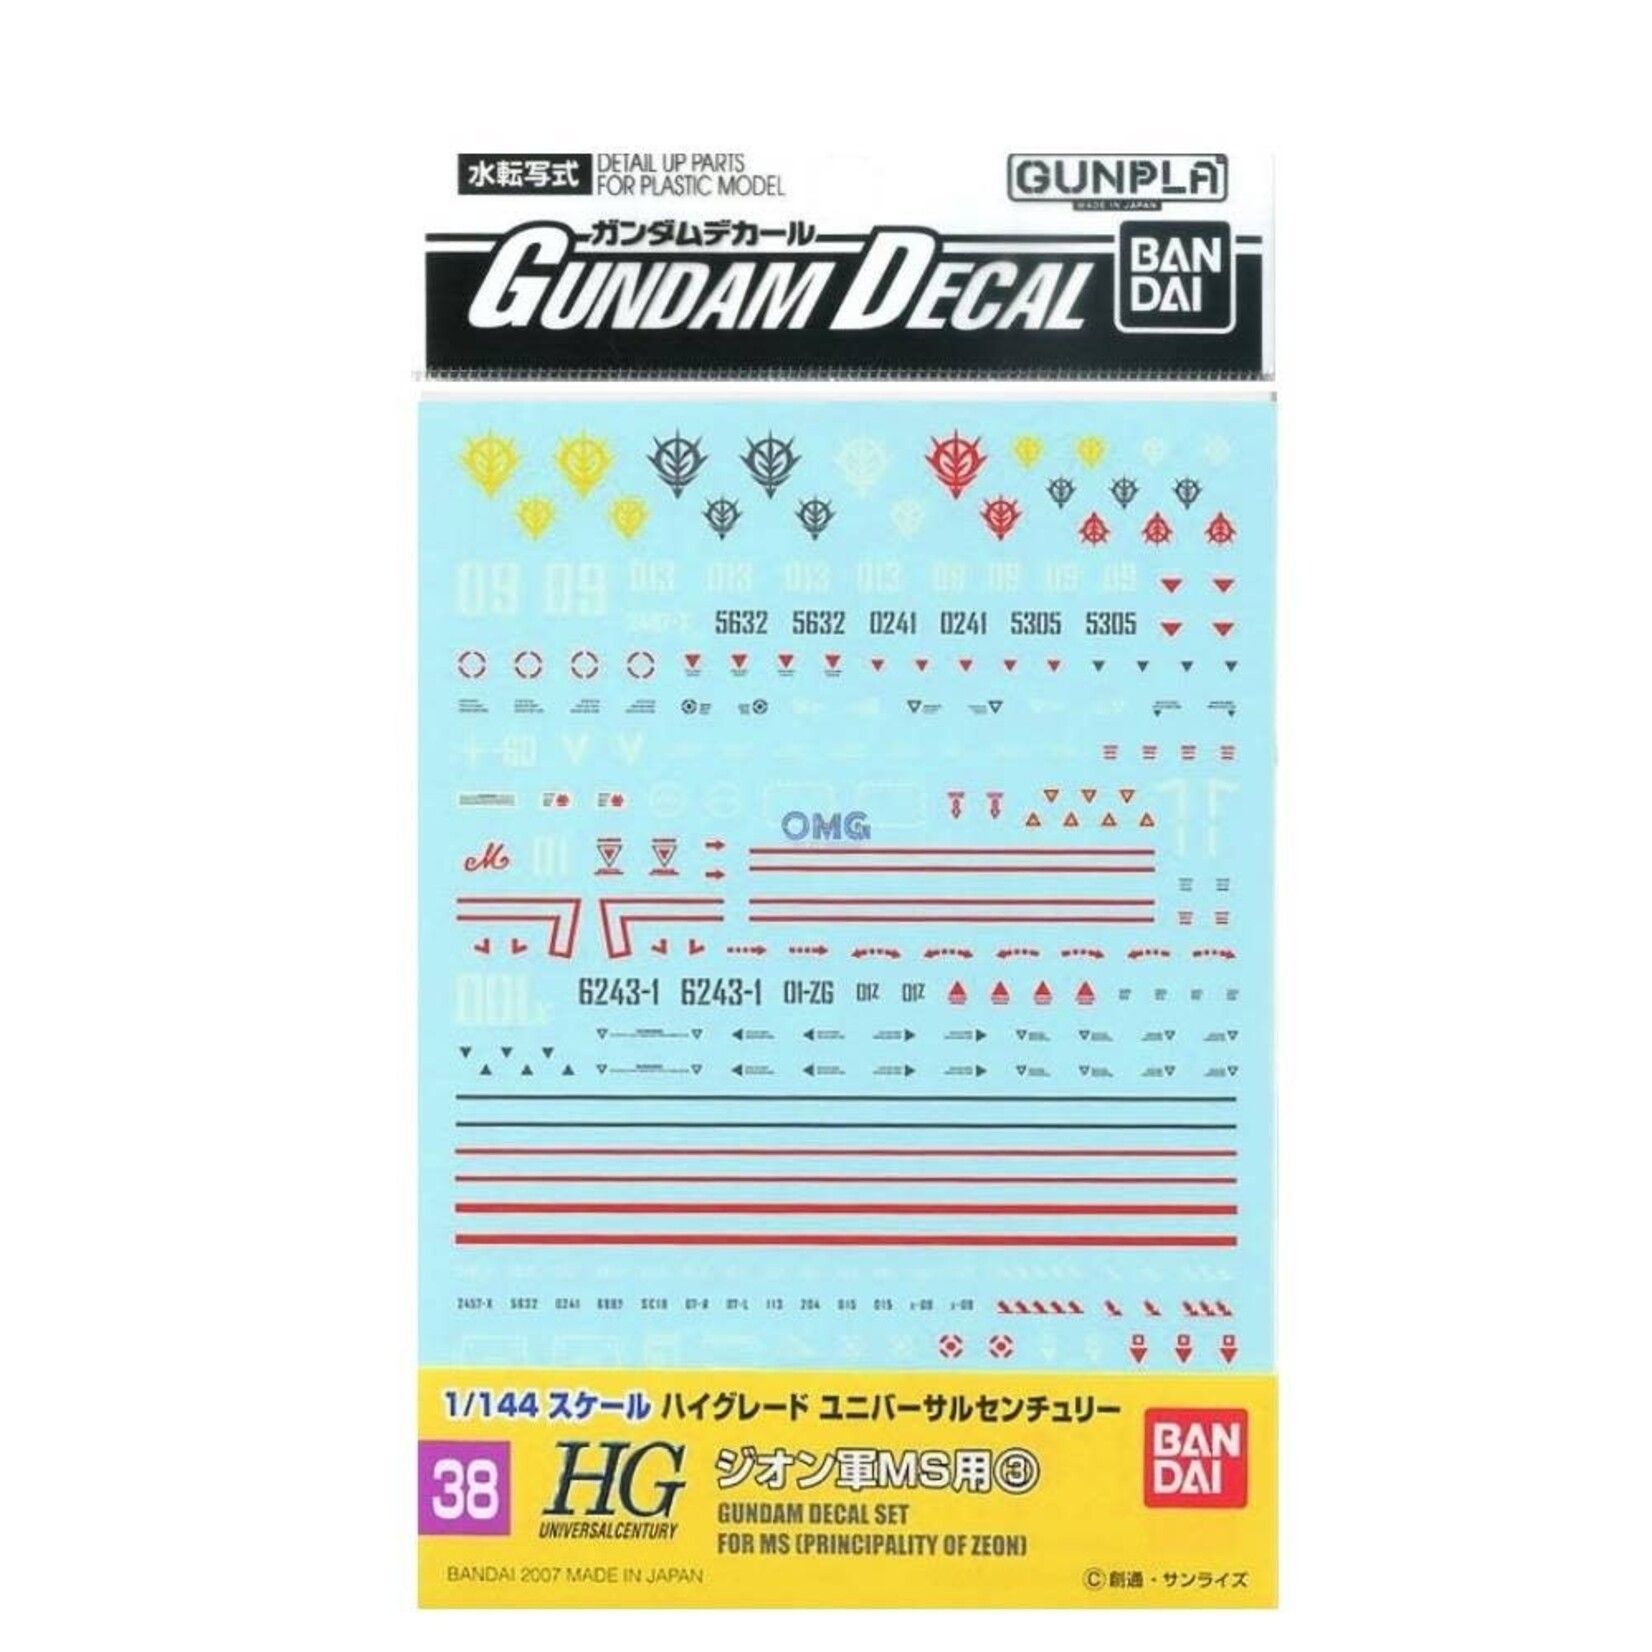 Bandai Bandai 2019431  GD-38 HGUC ZEON 3 "Mobile Suit Gundam" Decal